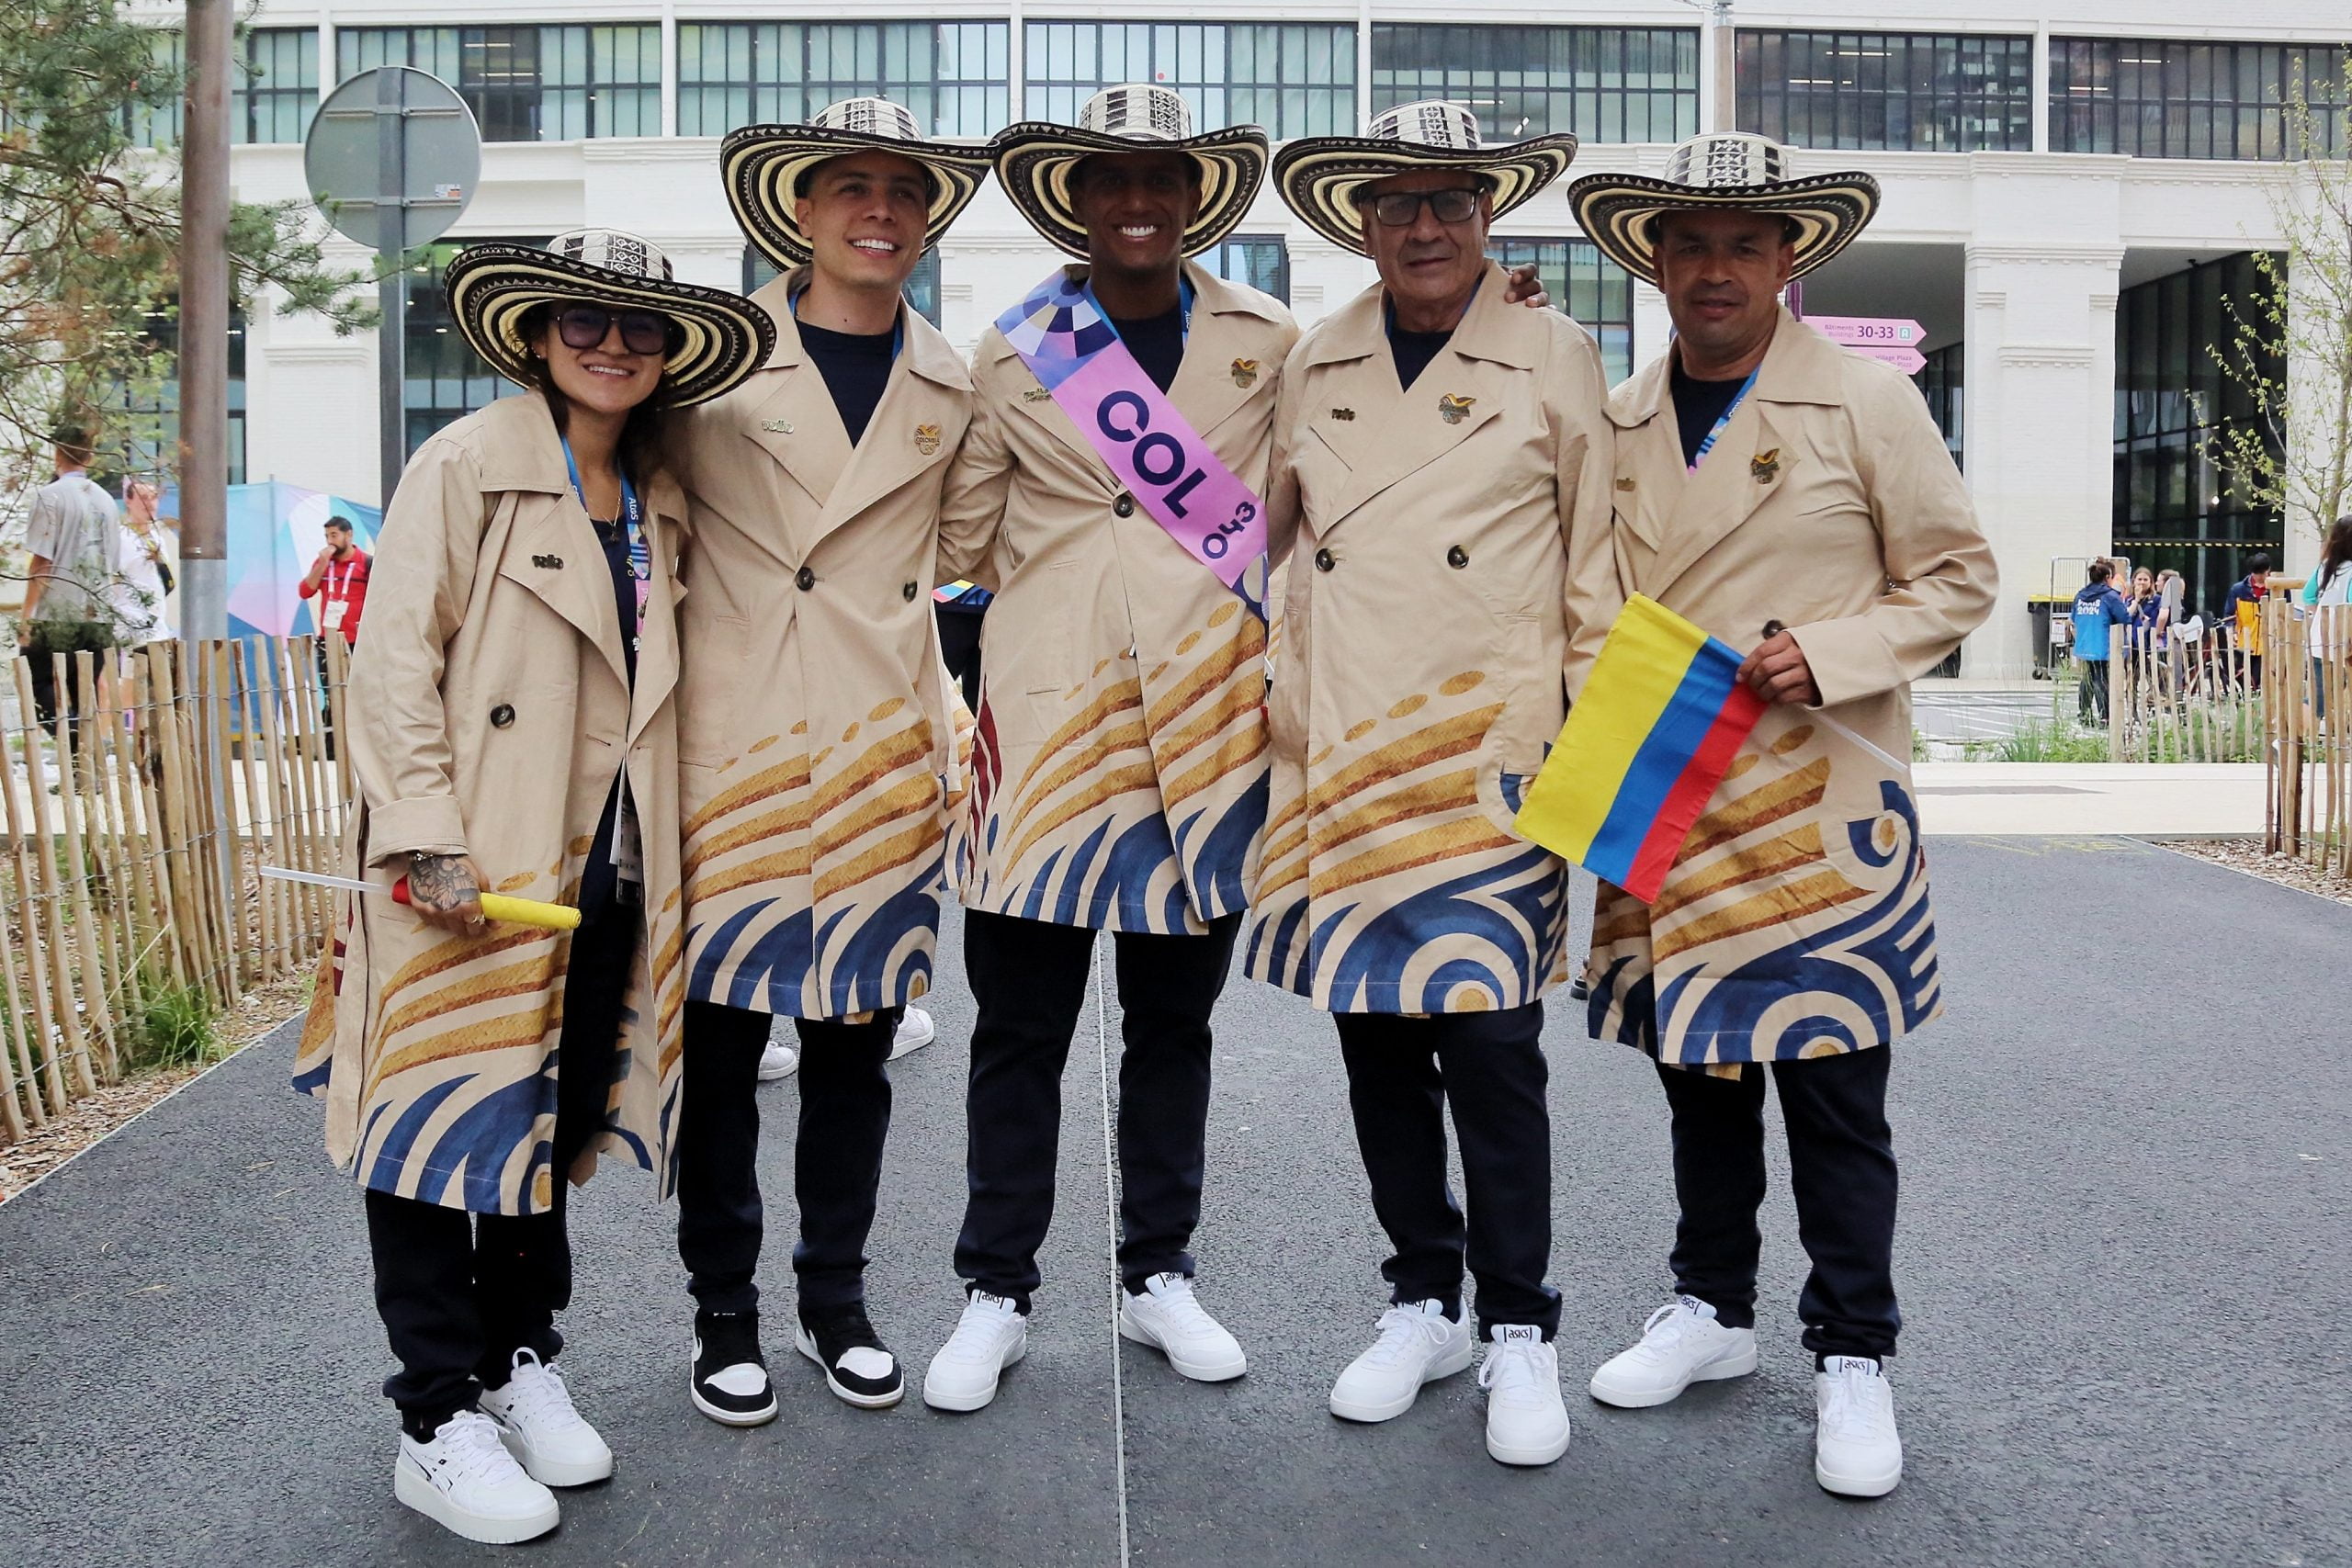 Colombia llevó el sombrero vueltiao a los Juegos Olímpicos París 2024